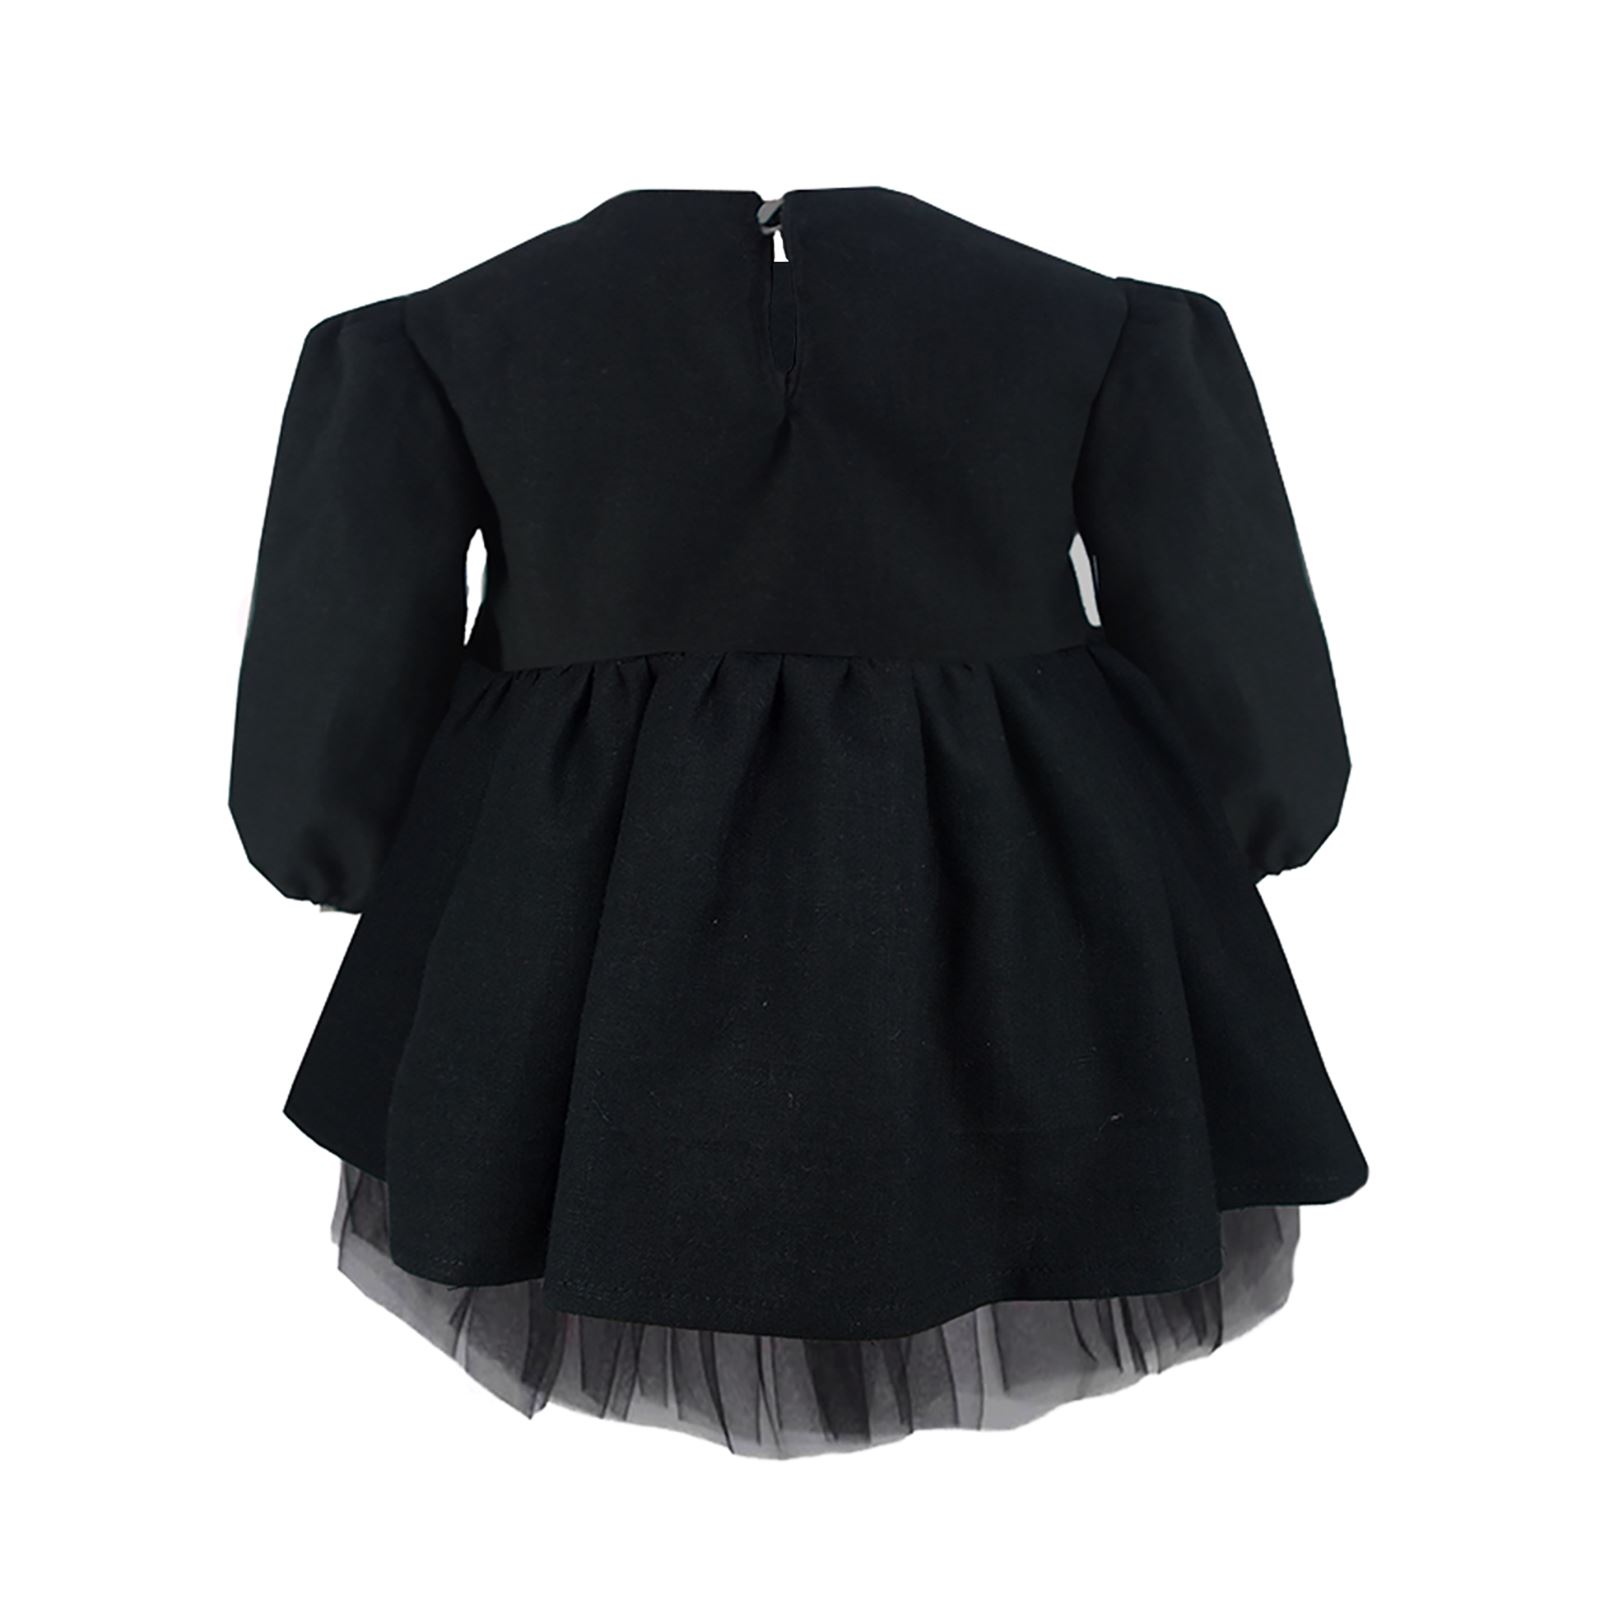 Shecco Babba Kız Çocuk Tütü Elbise Uzun Kollu 1-5 Yaş Siyah